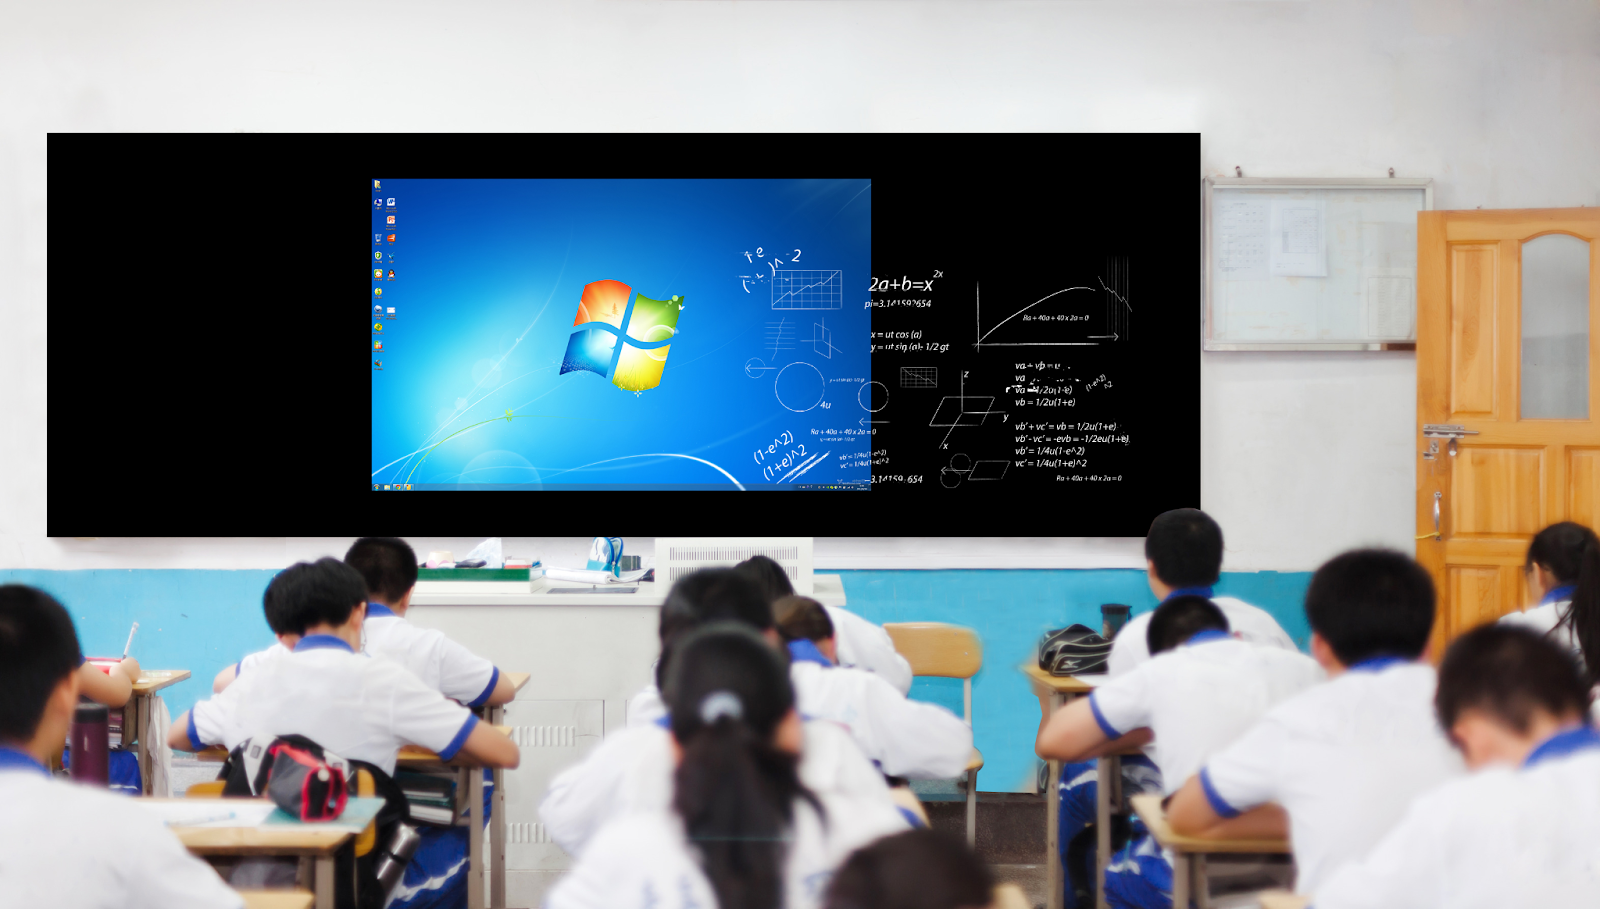 Lợi ích của việc sử dụng màn hình cảm ứng trong giáo dục là gì?